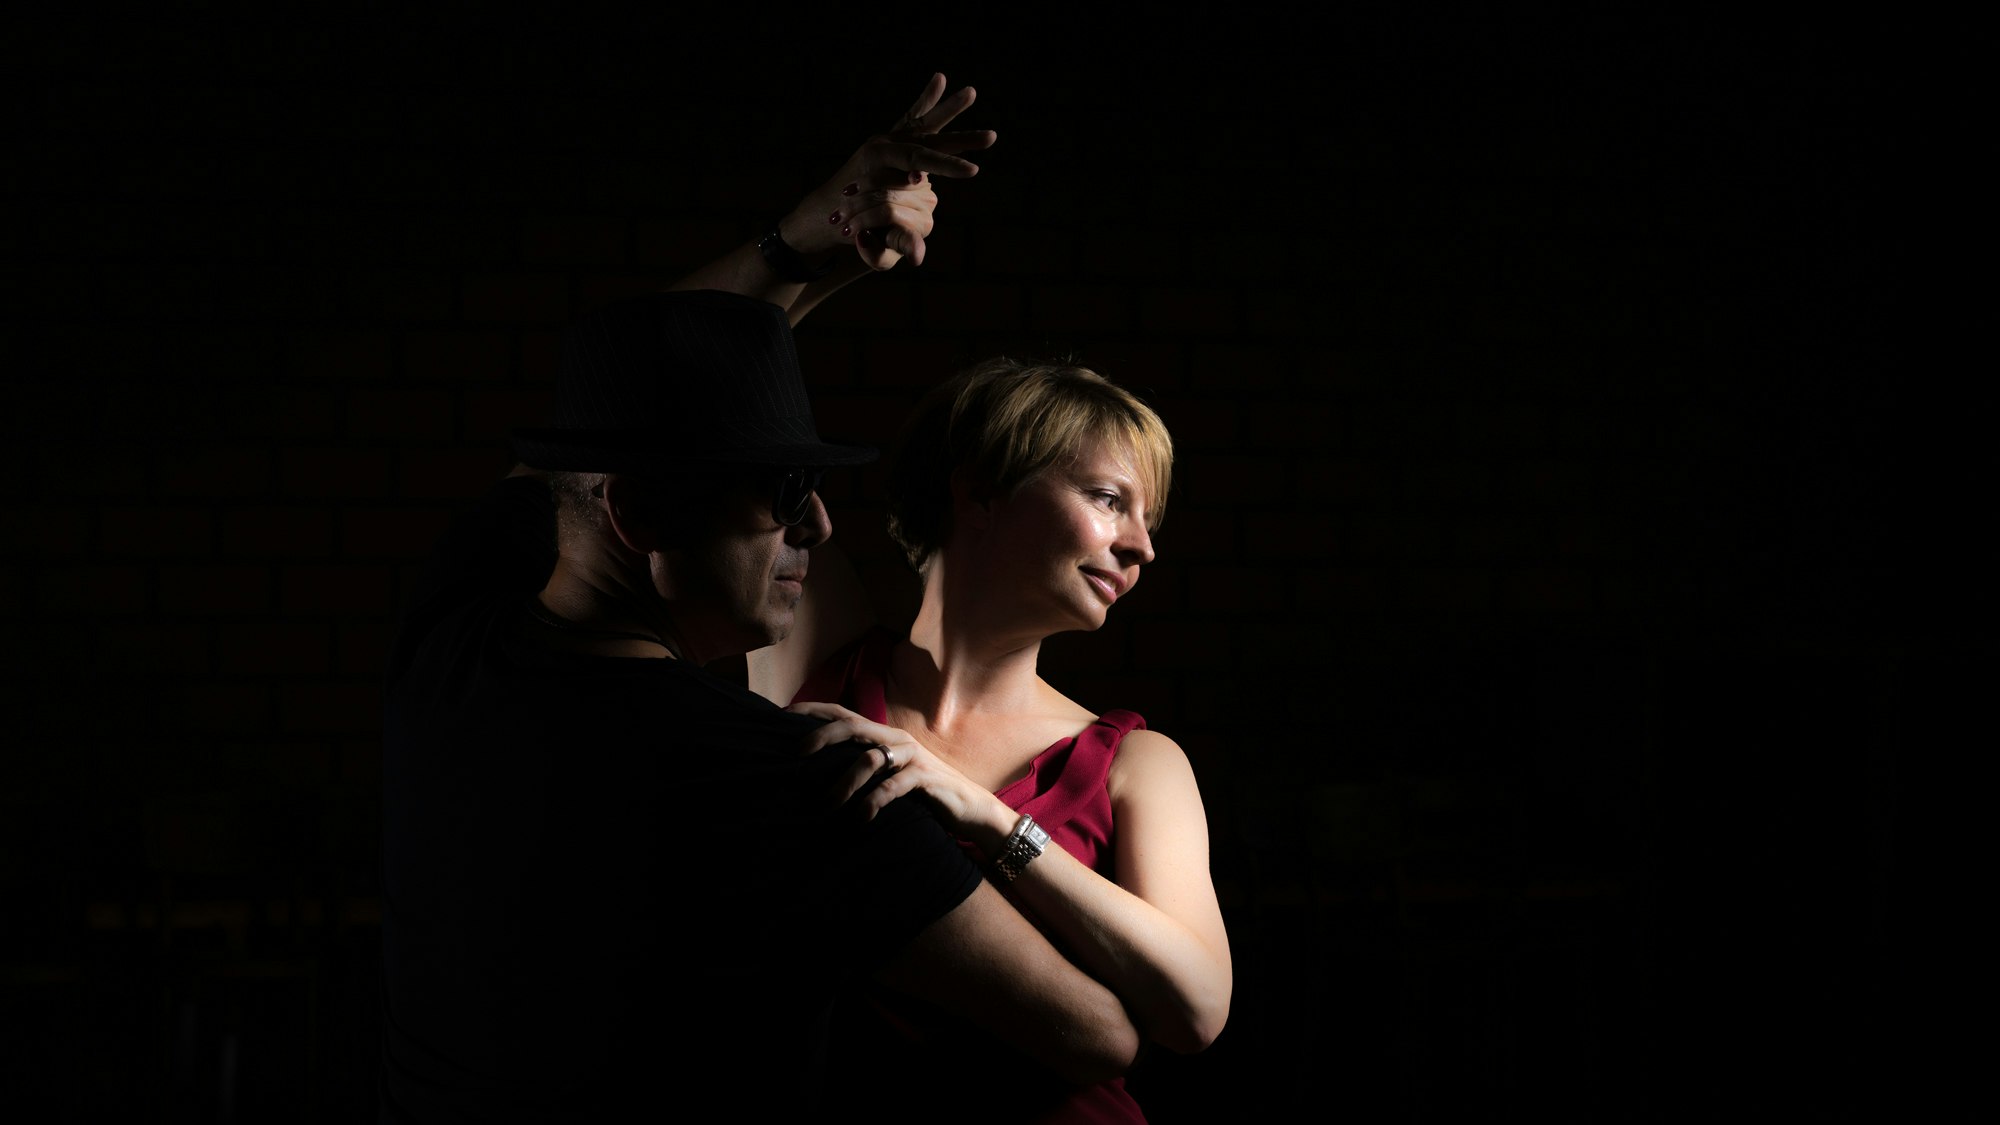 Jeannine tanzt mit einem Partner auf einem dunklen, stimmungsvollen Bild.